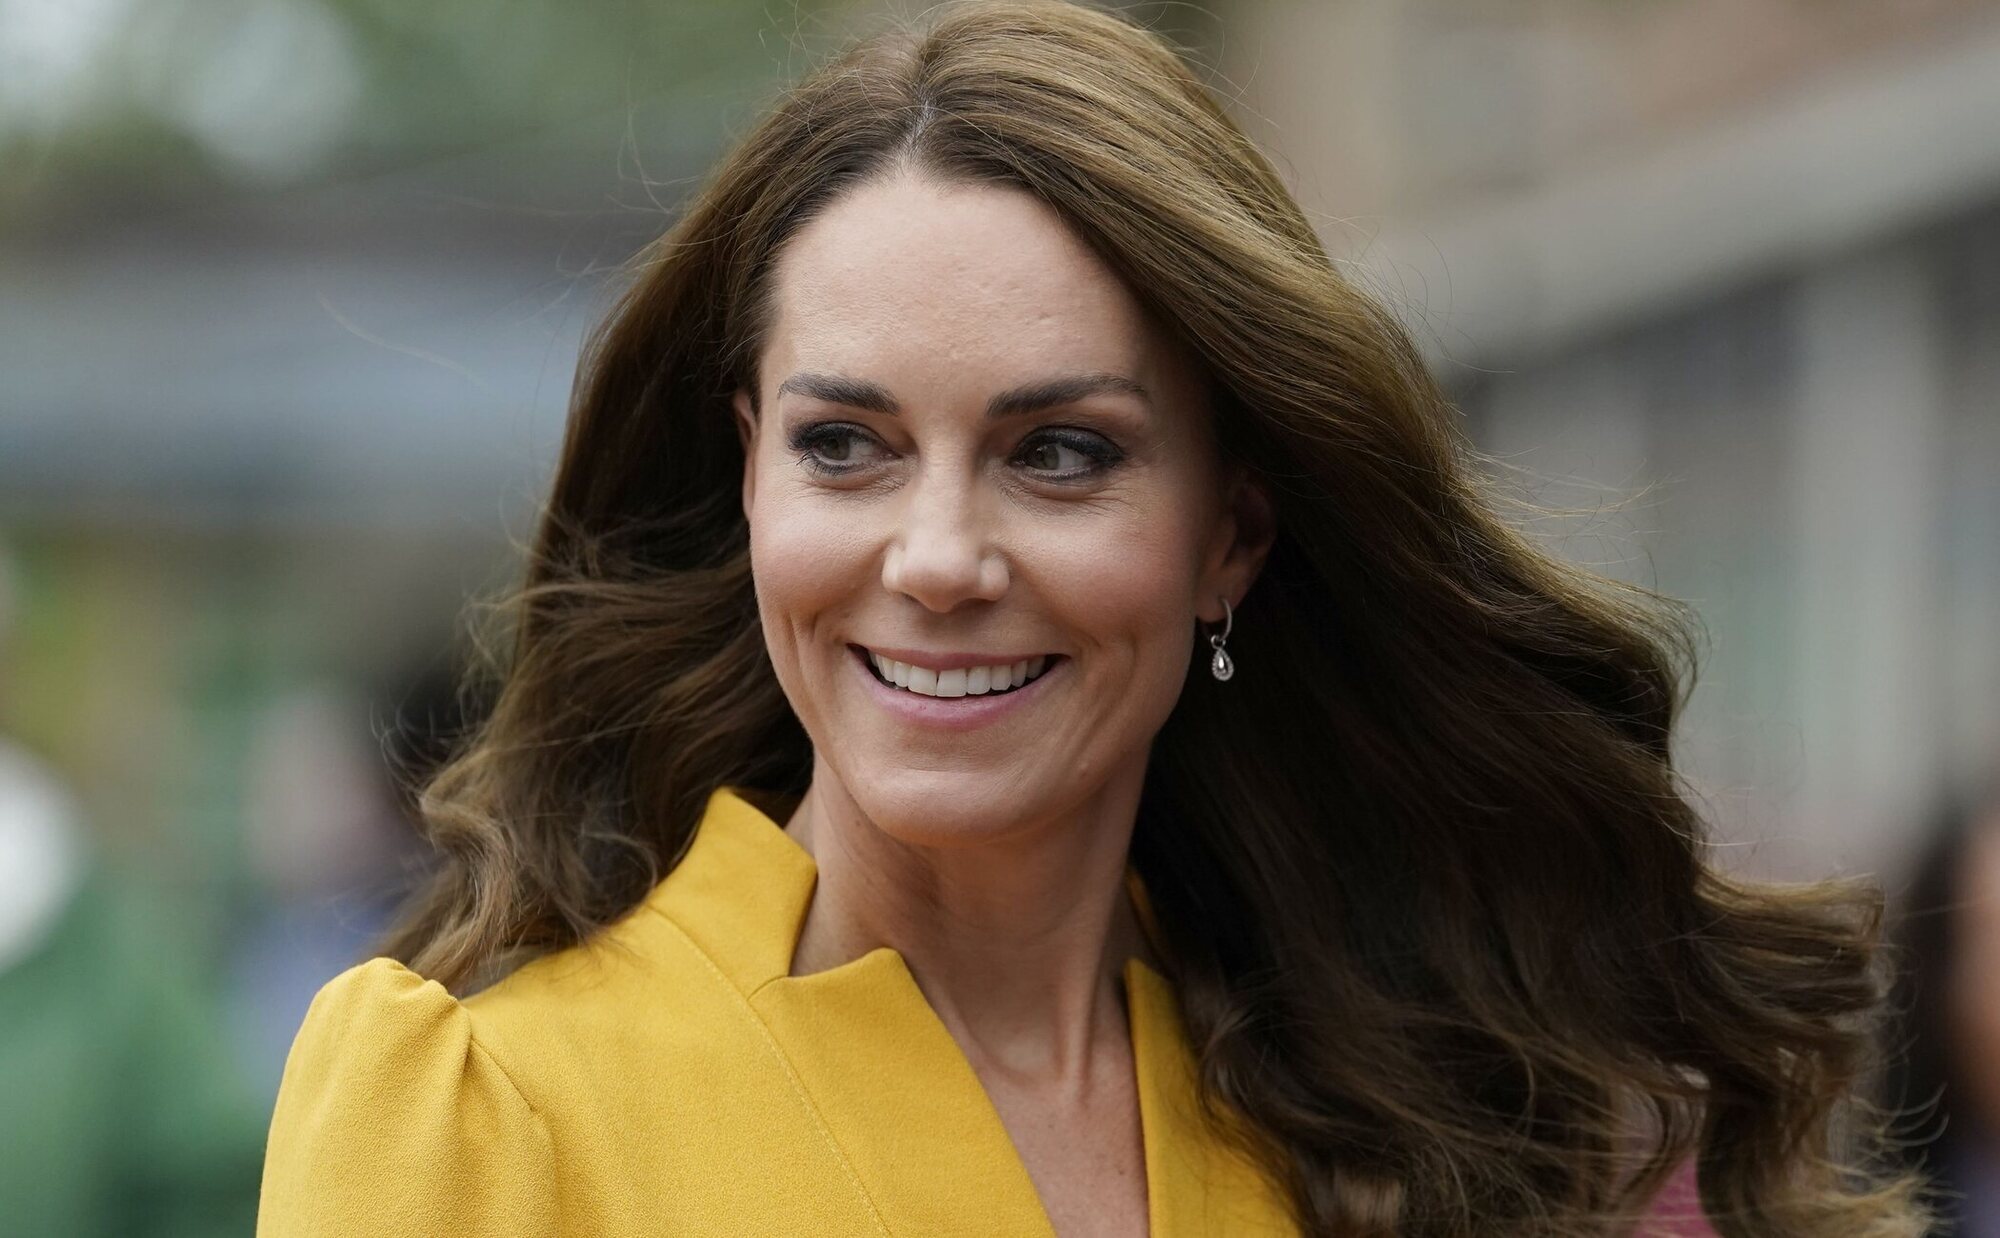 La salud de Kate Middleton "ha dado un giro": "Es un gran alivio ver que tolera la medicación. Ha sido una época preocupante"